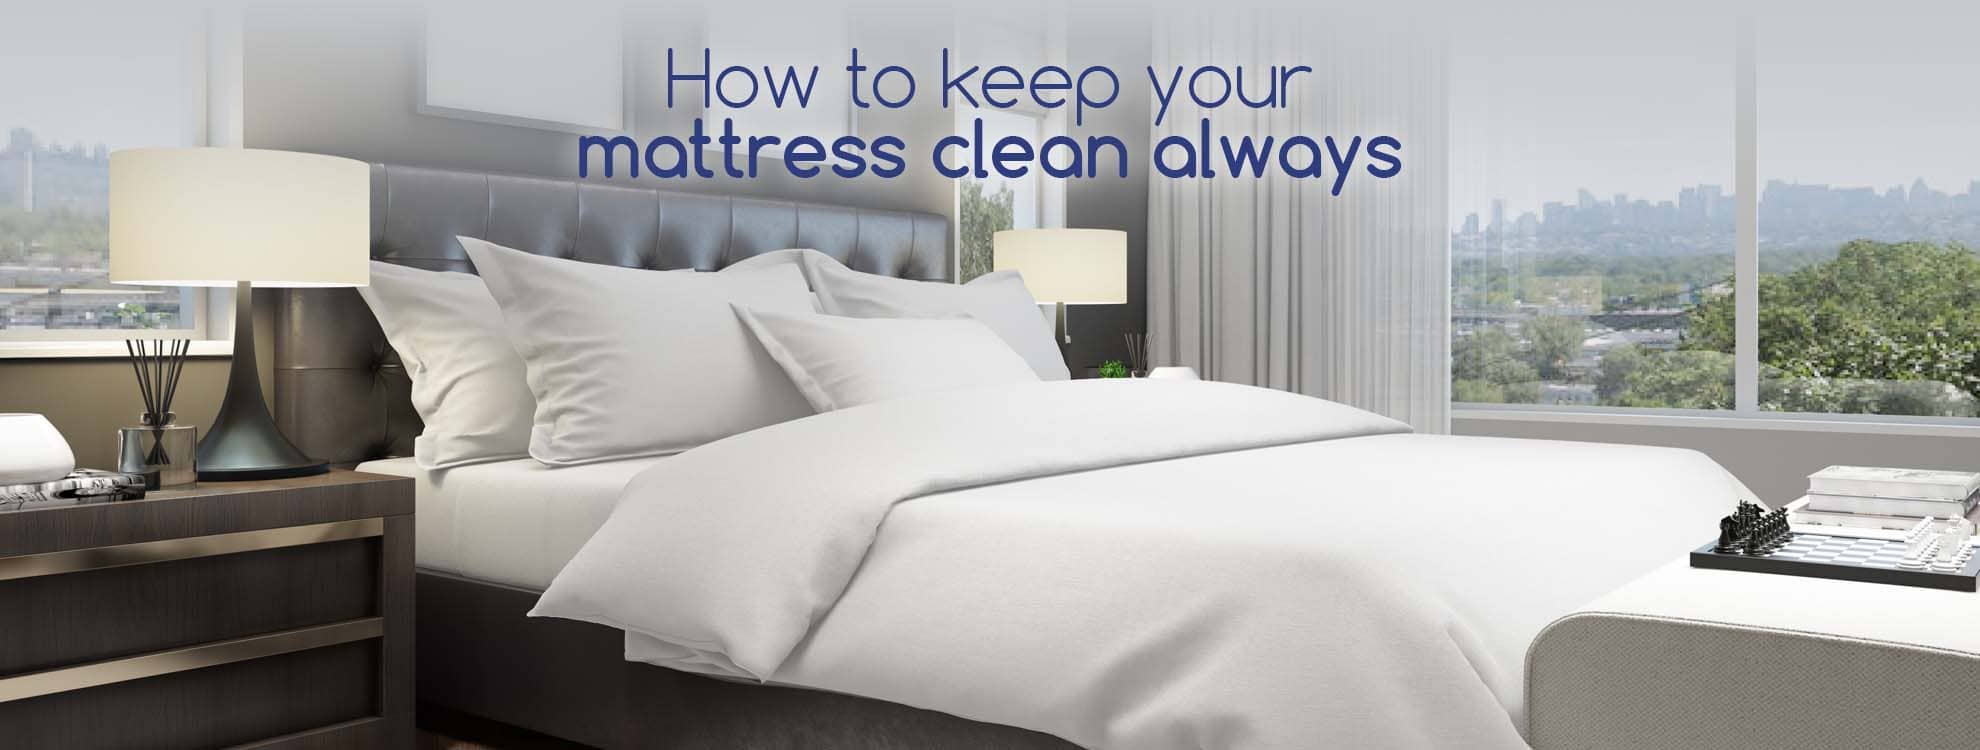 clean your mattress always